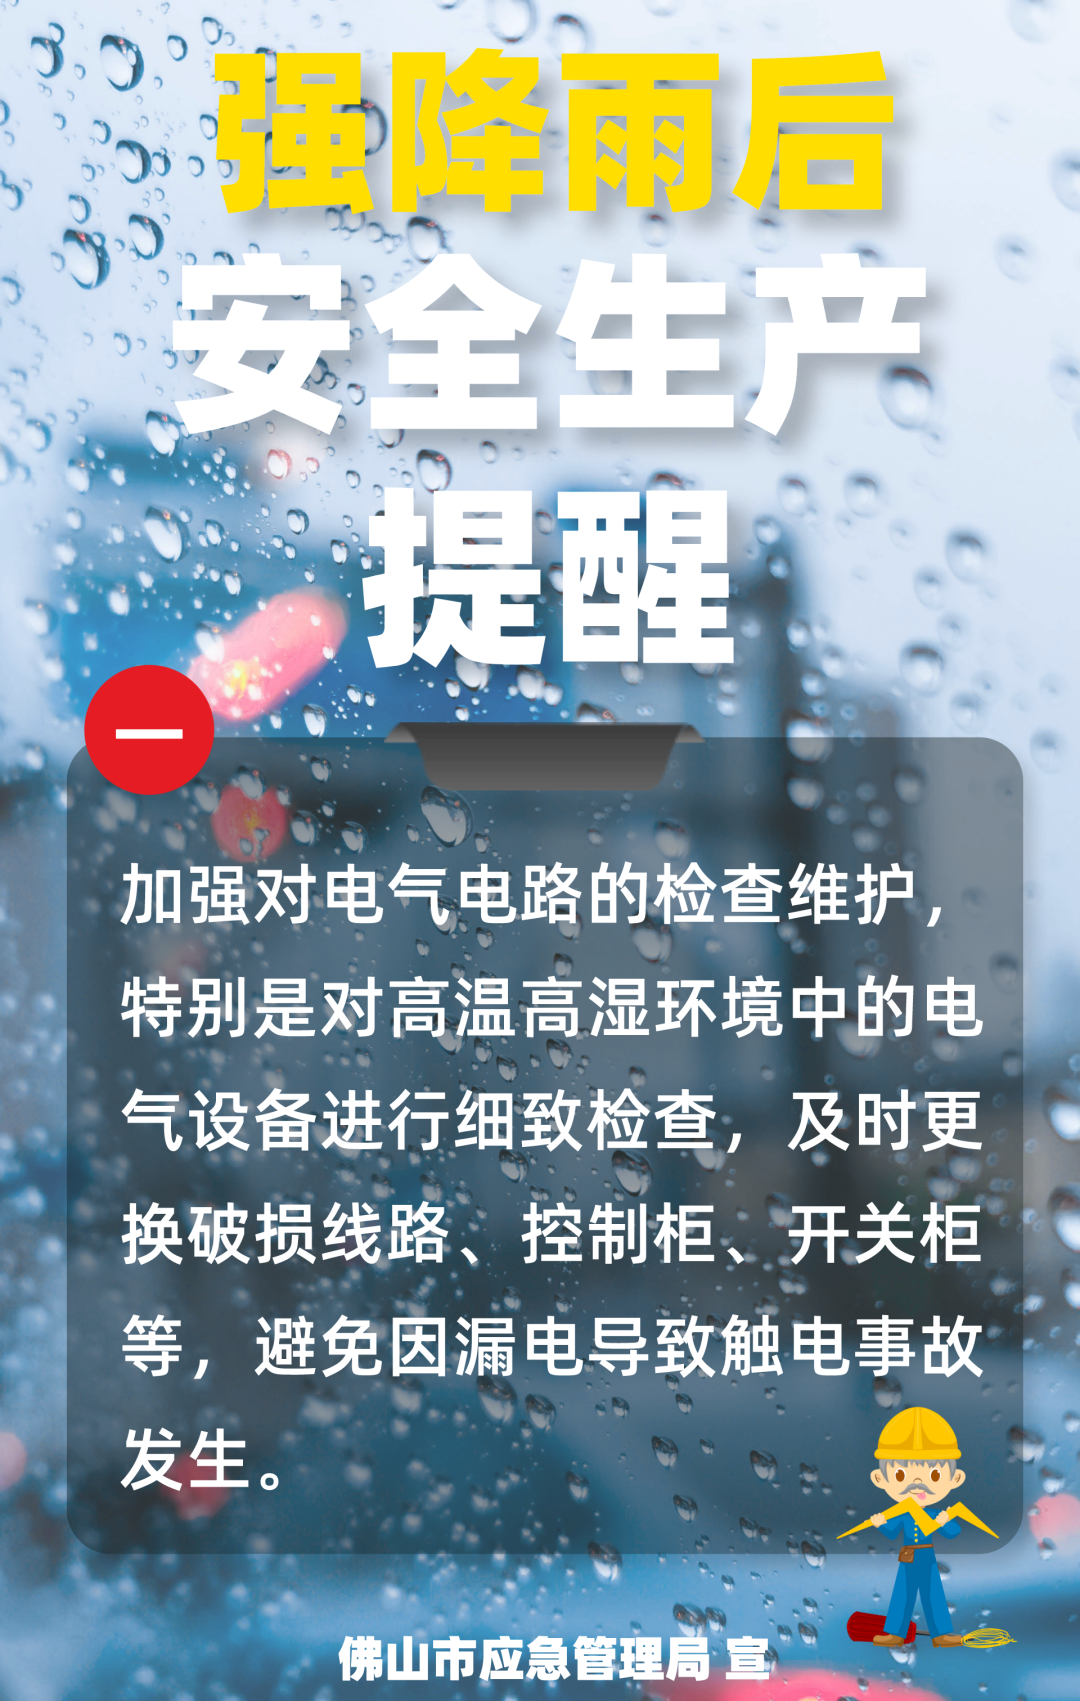 广西北流更新发布暴雨红色预警信号|暴雨|广西_新浪新闻